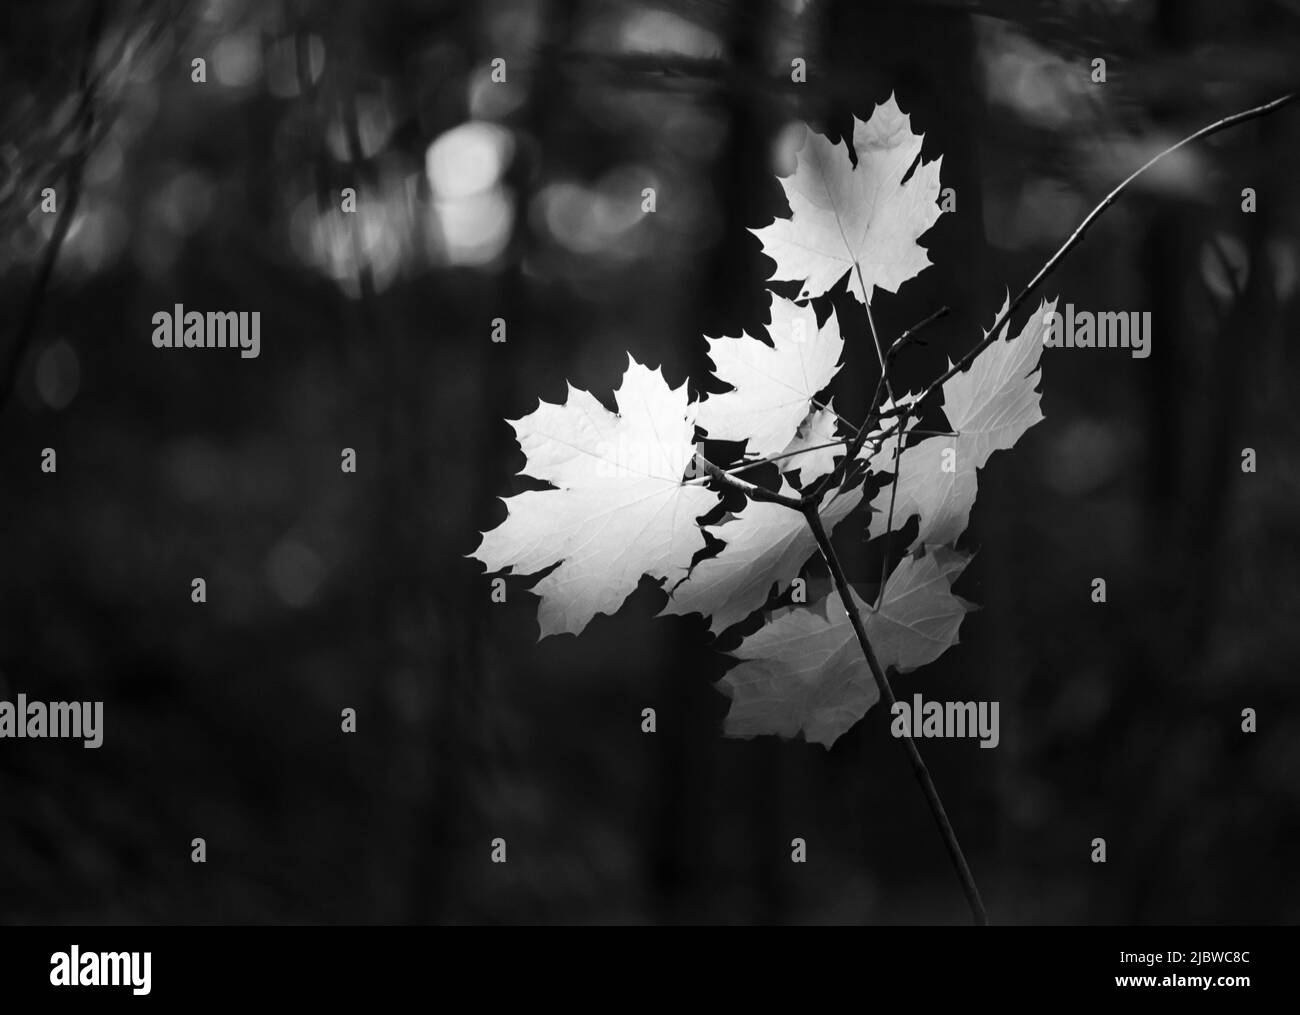 Foto in bianco e nero di luce solare che cade su un ramo di acero, Acer saccharum, causando le foglie a brillare nell'oscurità che li circonda Foto Stock